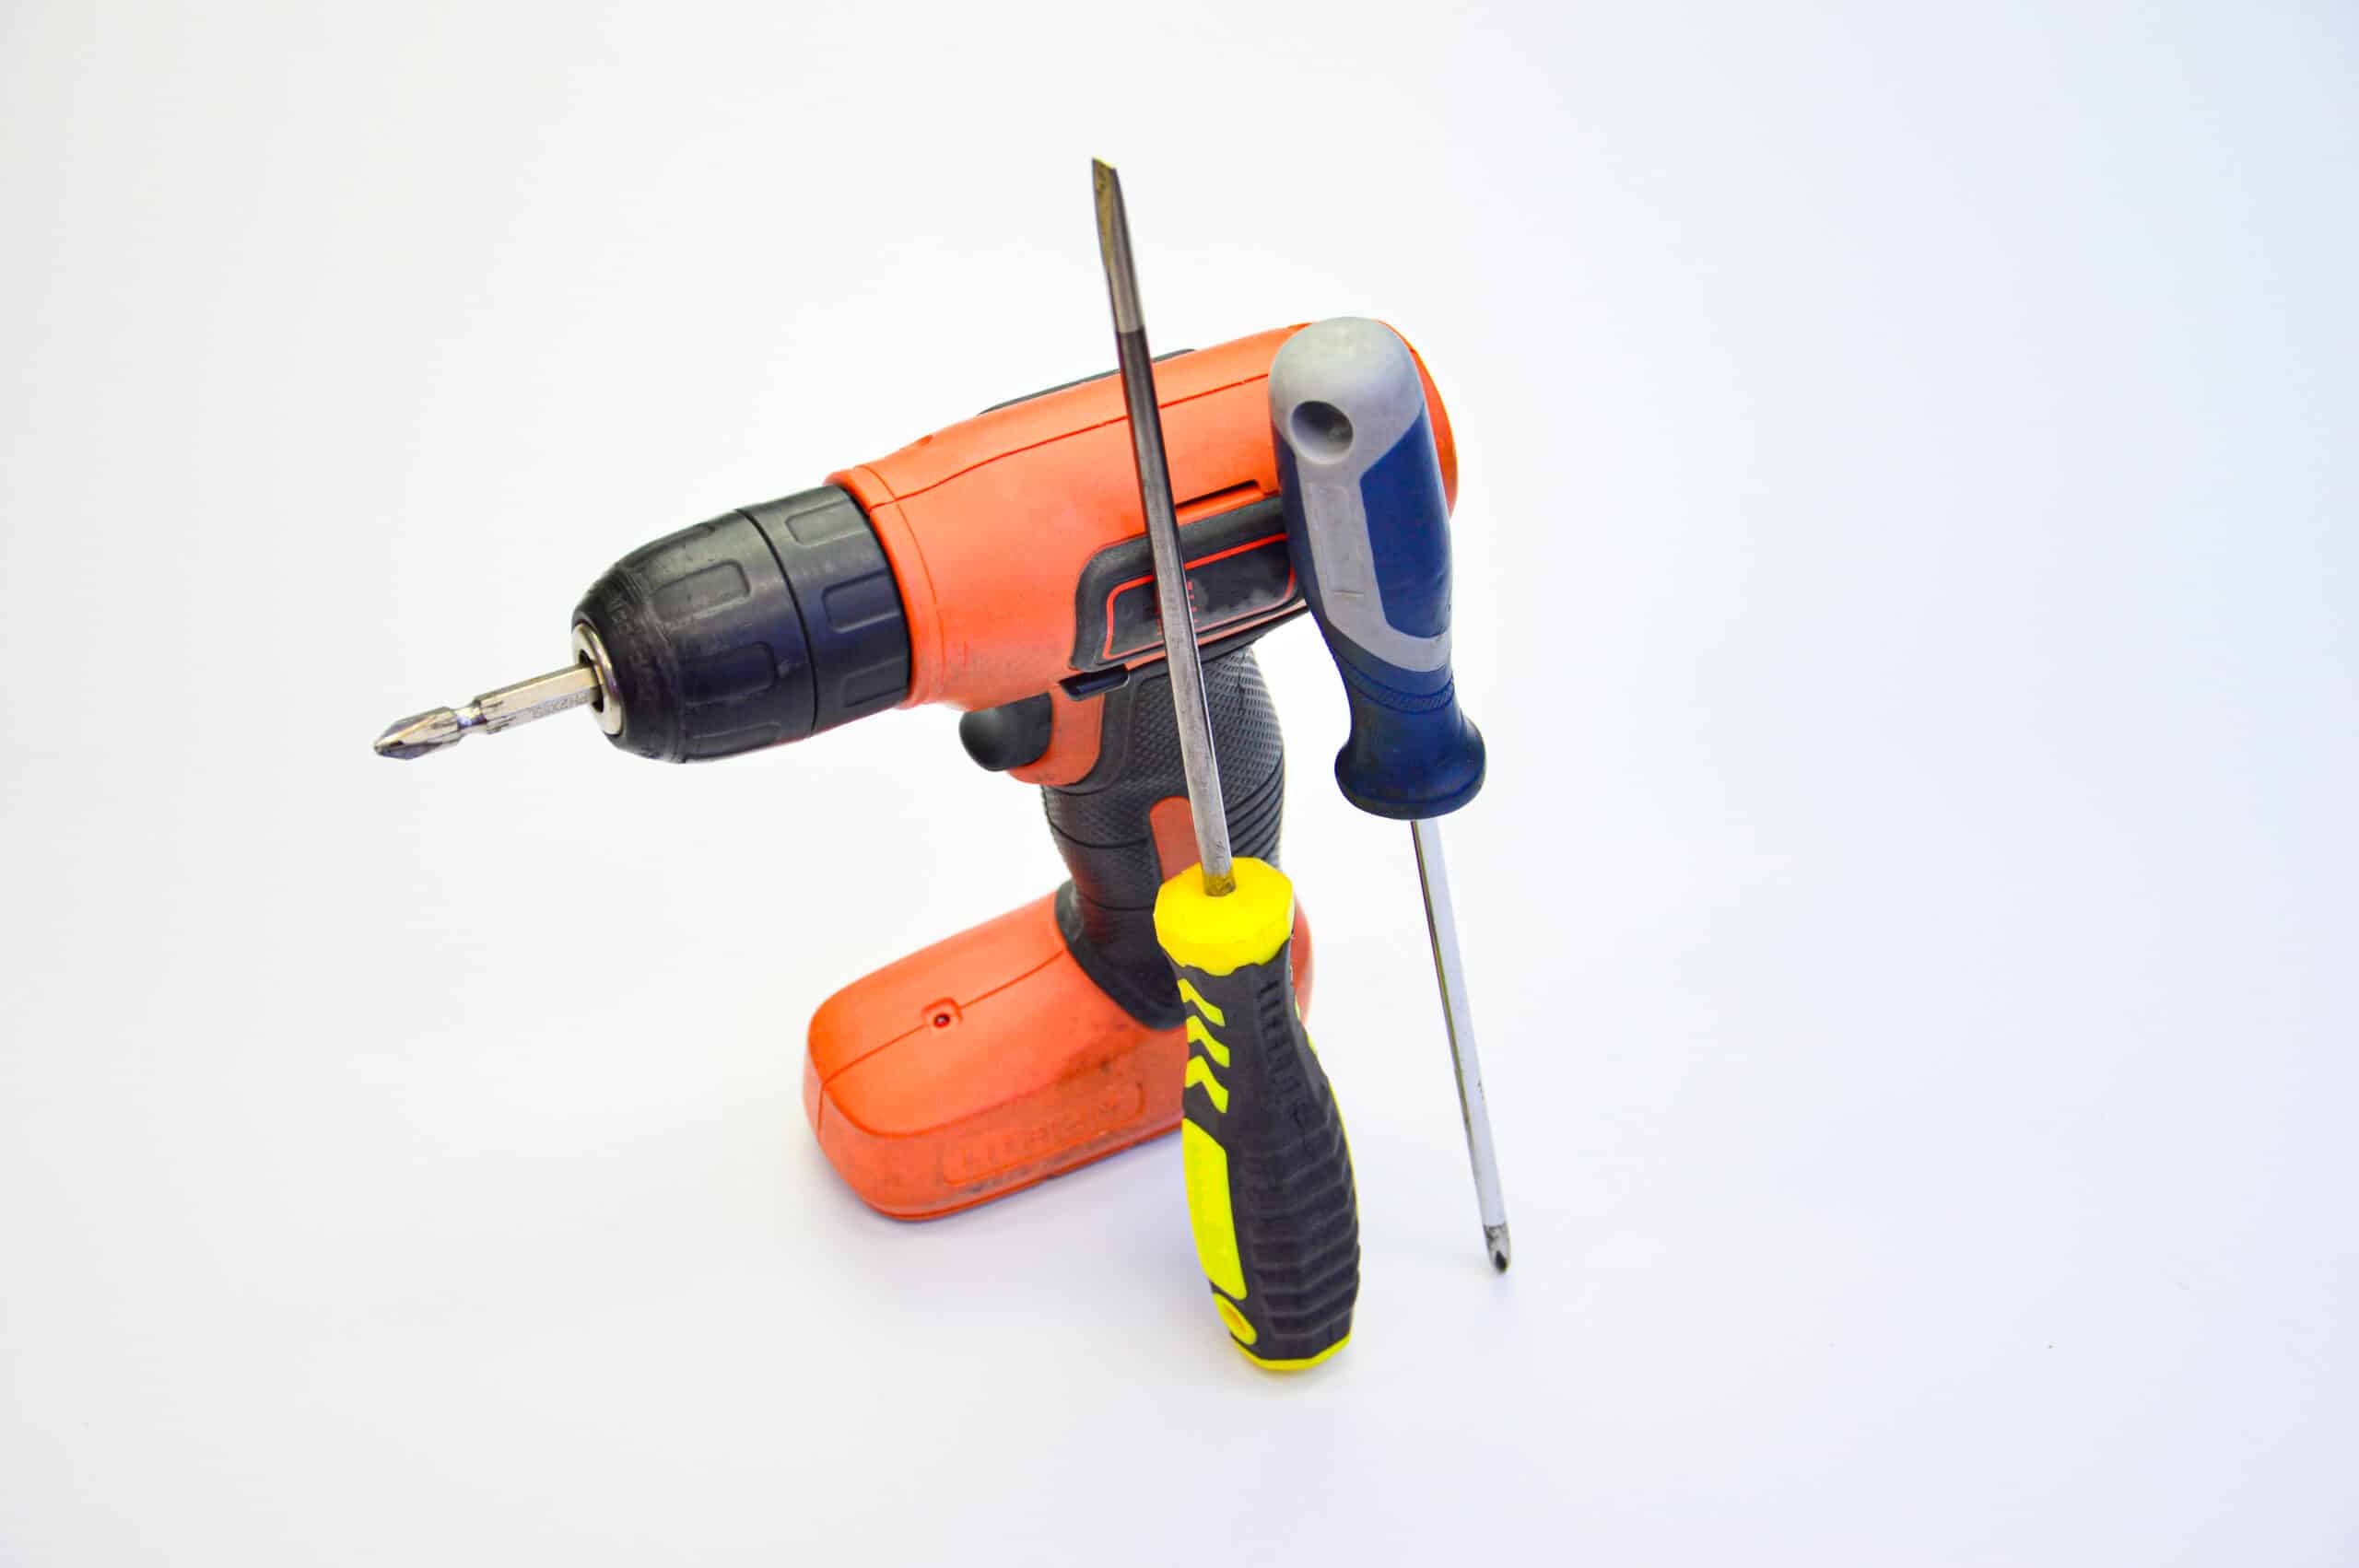 theprecisiontools.com : How do you use a cordless drill as a screwdriver?